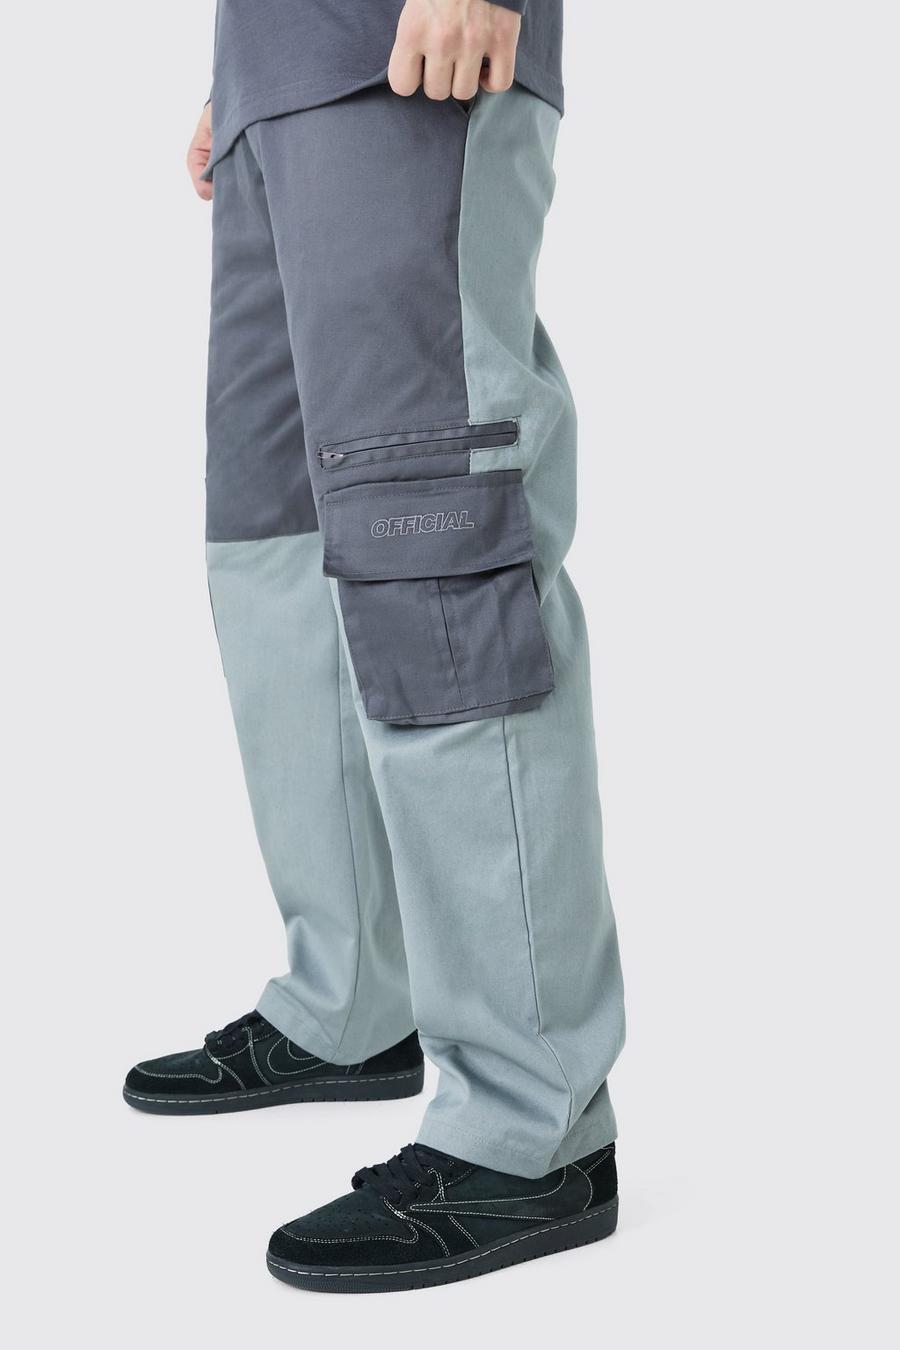 Pantaloni Cargo Tall rilassati a blocchi di colore con logo Official, Charcoal gris